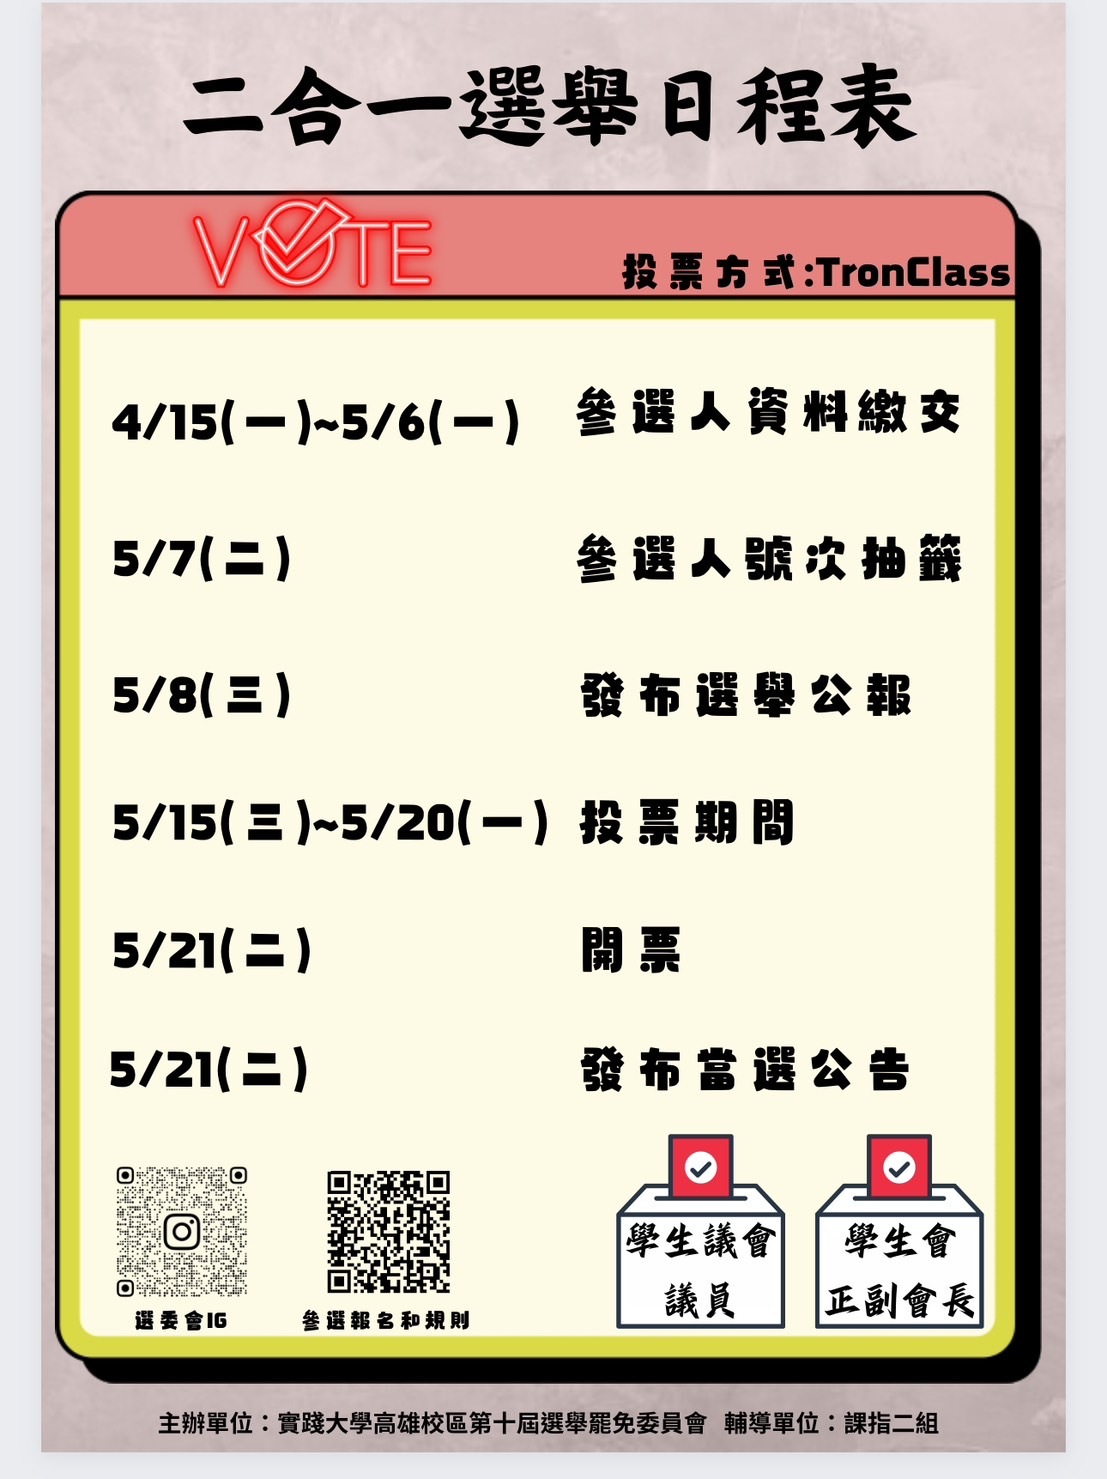 二合一選舉日程表